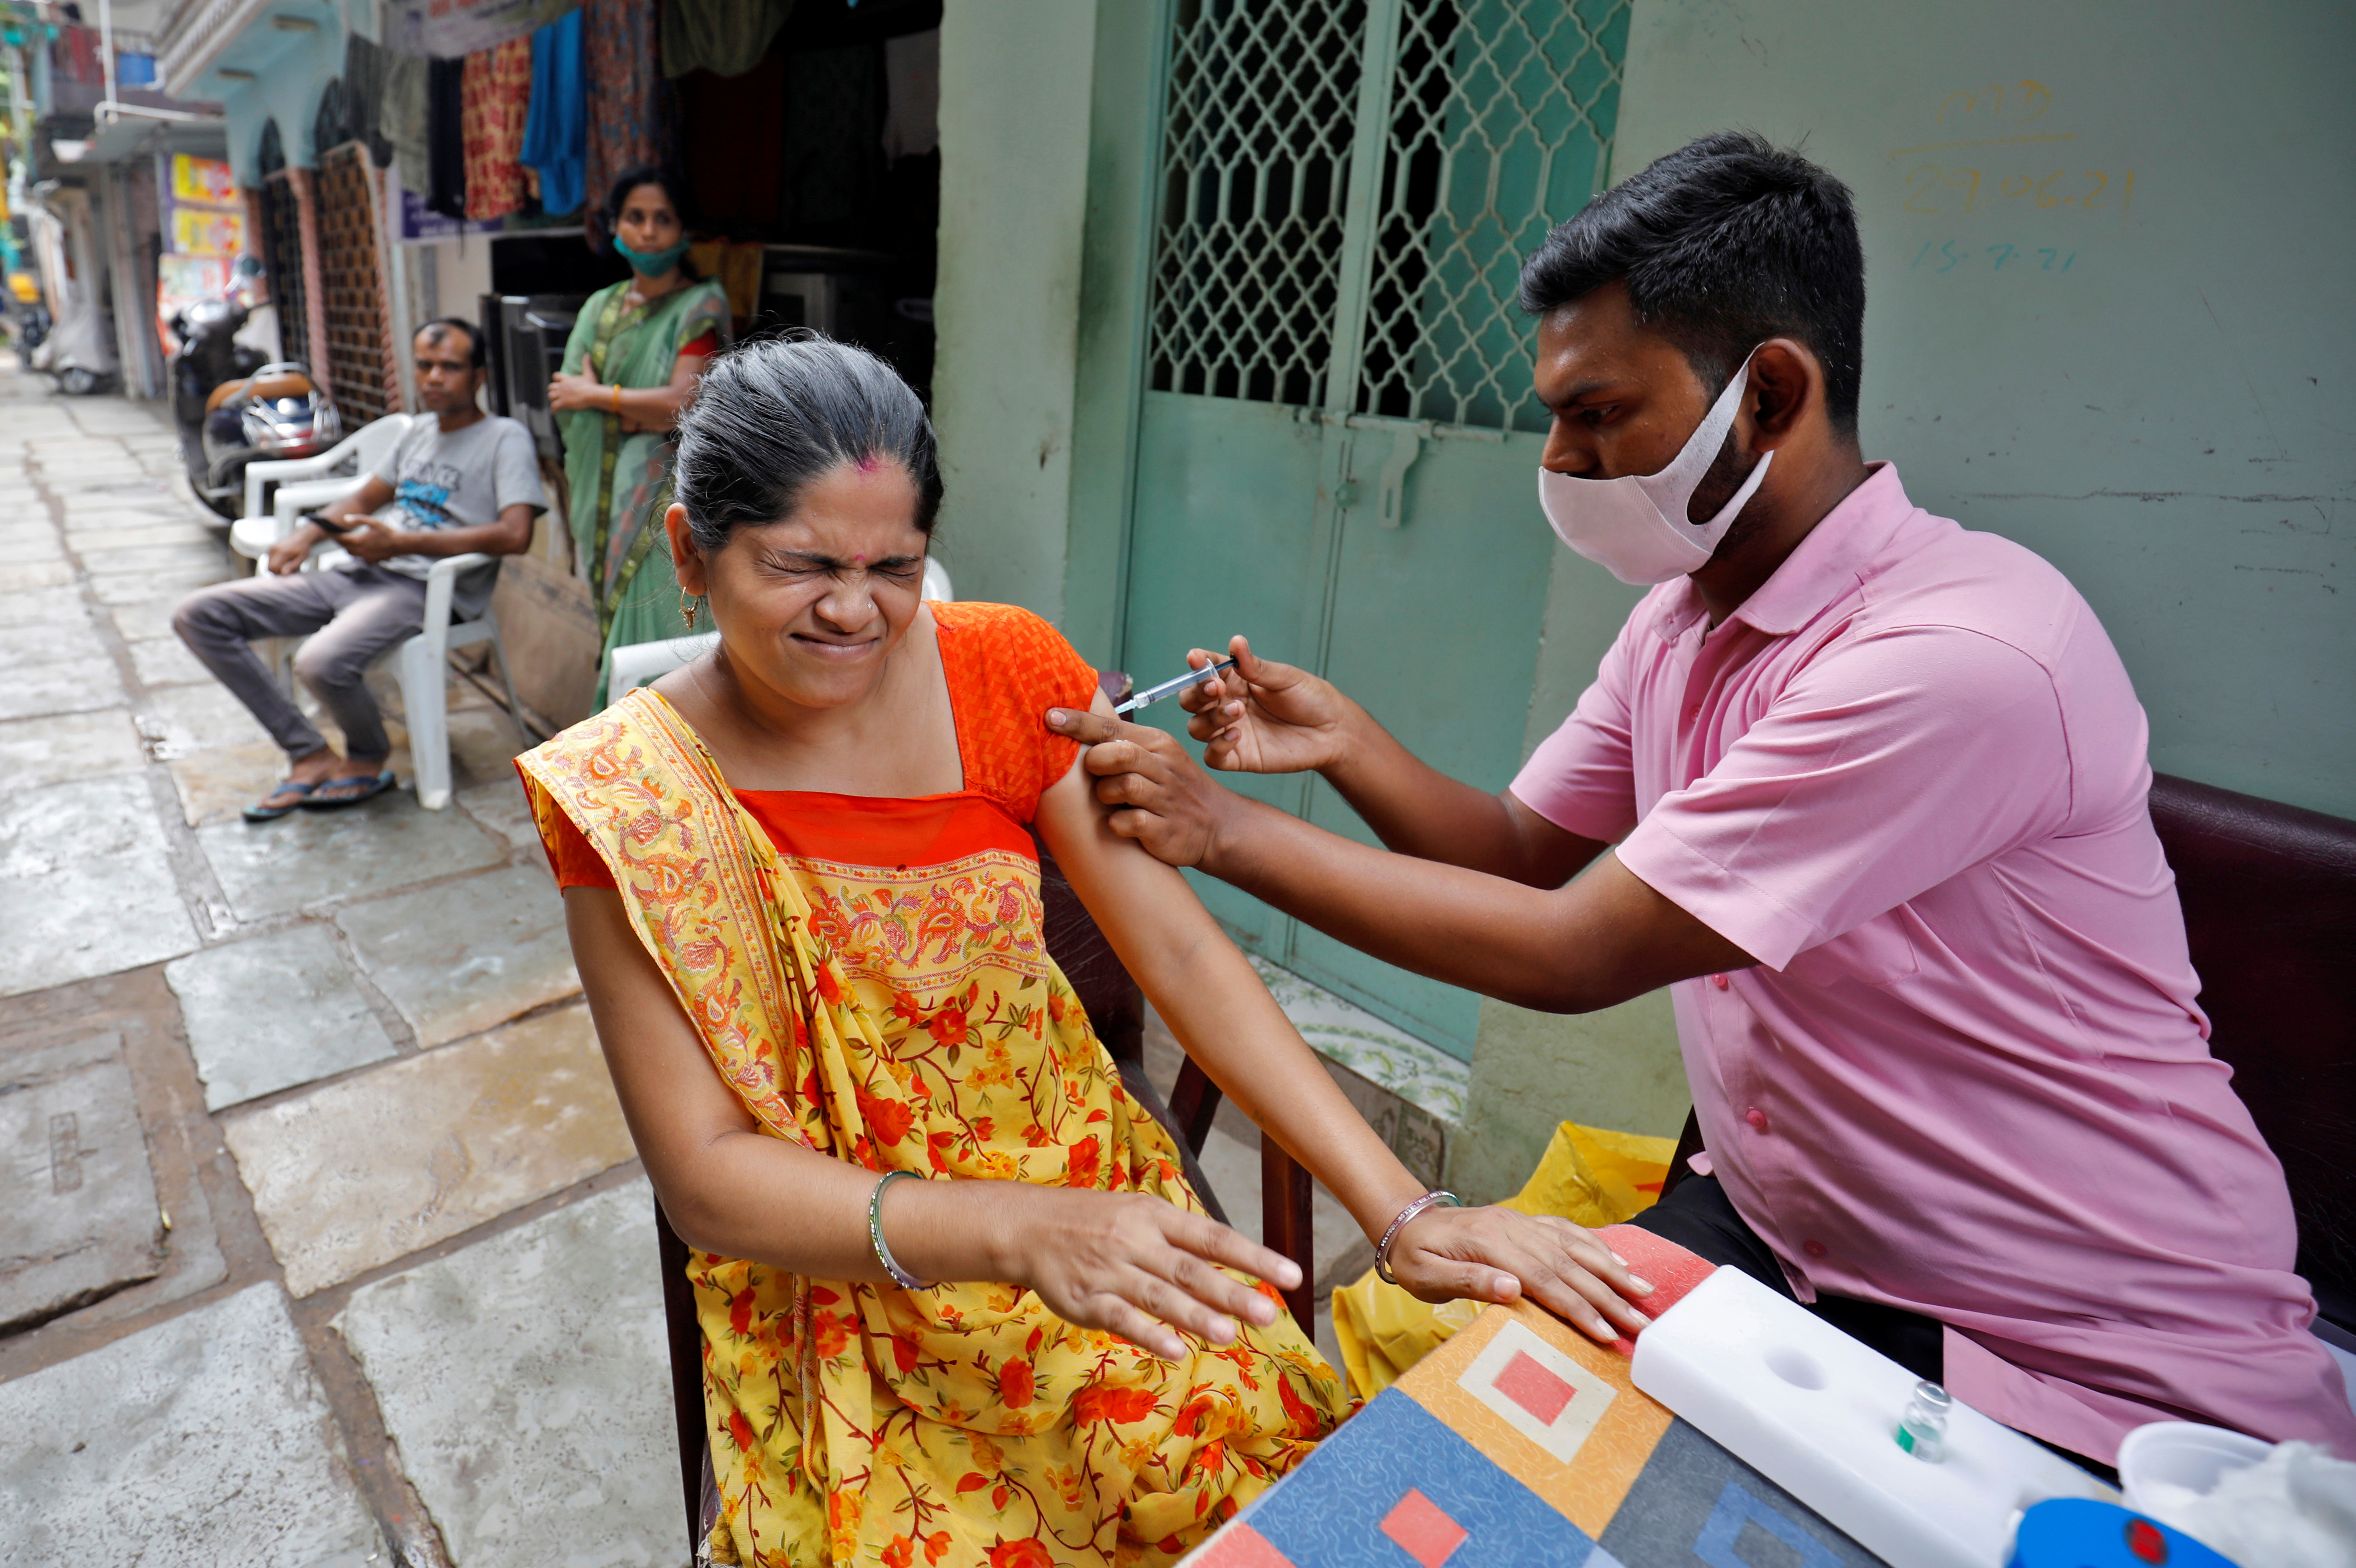 El 60% de las personas con ascendencia sudasiática son portadoras de la señal genética de alto riesgo, lo que explica en parte el exceso de muertes observado en algunas comunidades del Reino Unido y el impacto de COVID-19 en el subcontinente indio ( Foto de archivo tomada en Ahmedabad - Reuters)